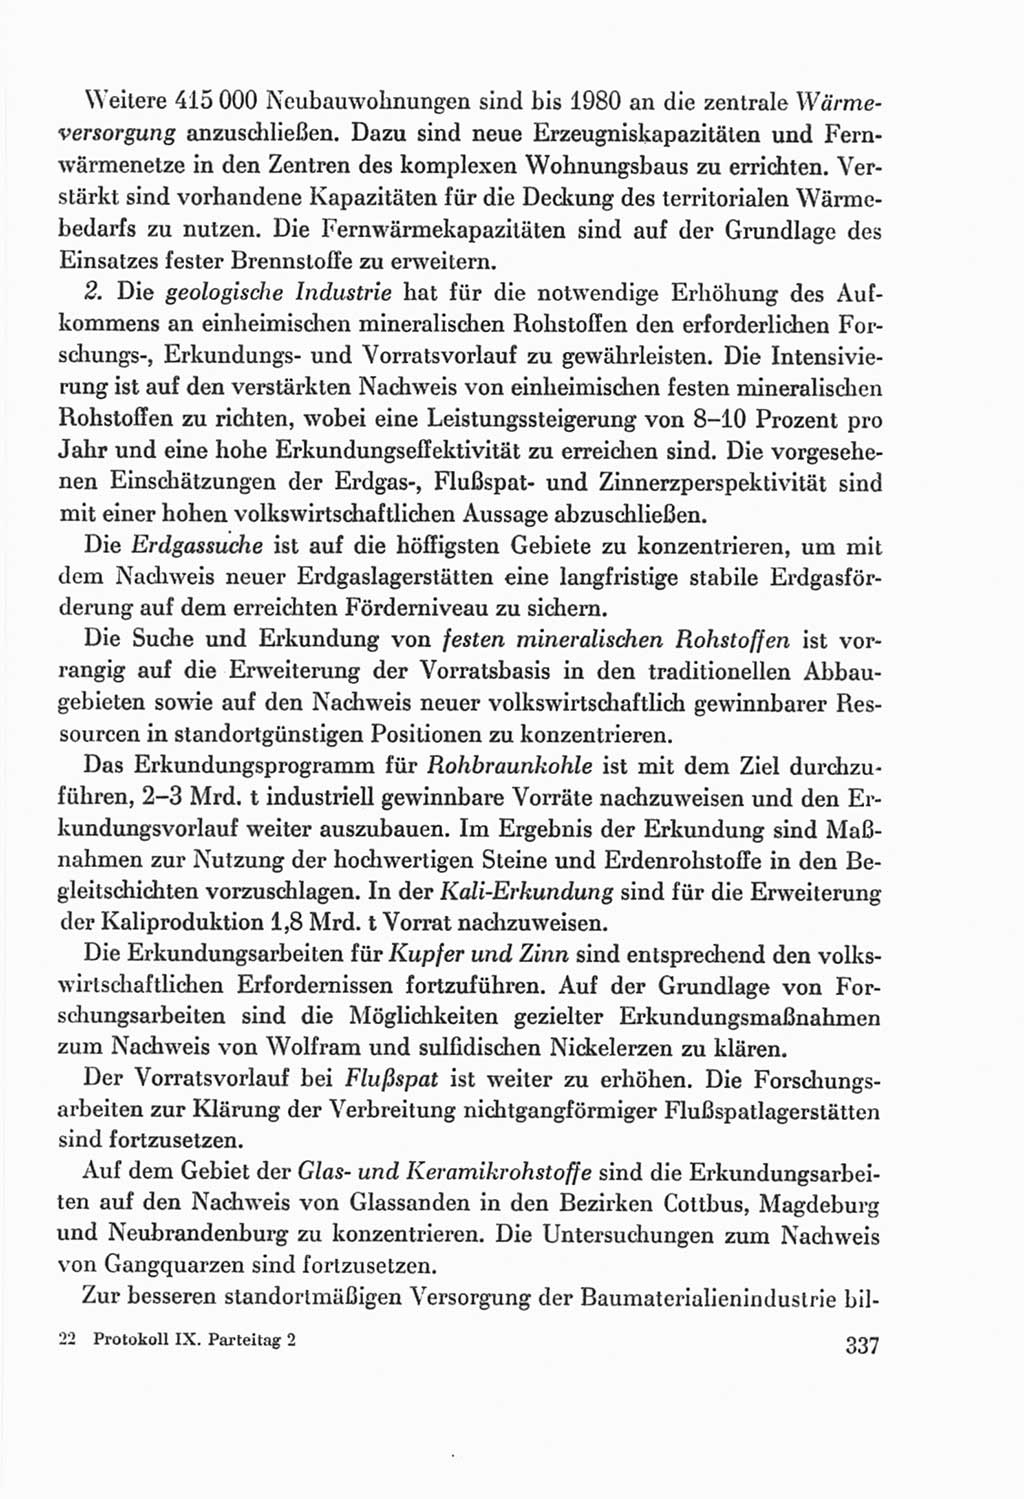 Protokoll der Verhandlungen des Ⅸ. Parteitages der Sozialistischen Einheitspartei Deutschlands (SED) [Deutsche Demokratische Republik (DDR)] 1976, Band 2, Seite 337 (Prot. Verh. Ⅸ. PT SED DDR 1976, Bd. 2, S. 337)